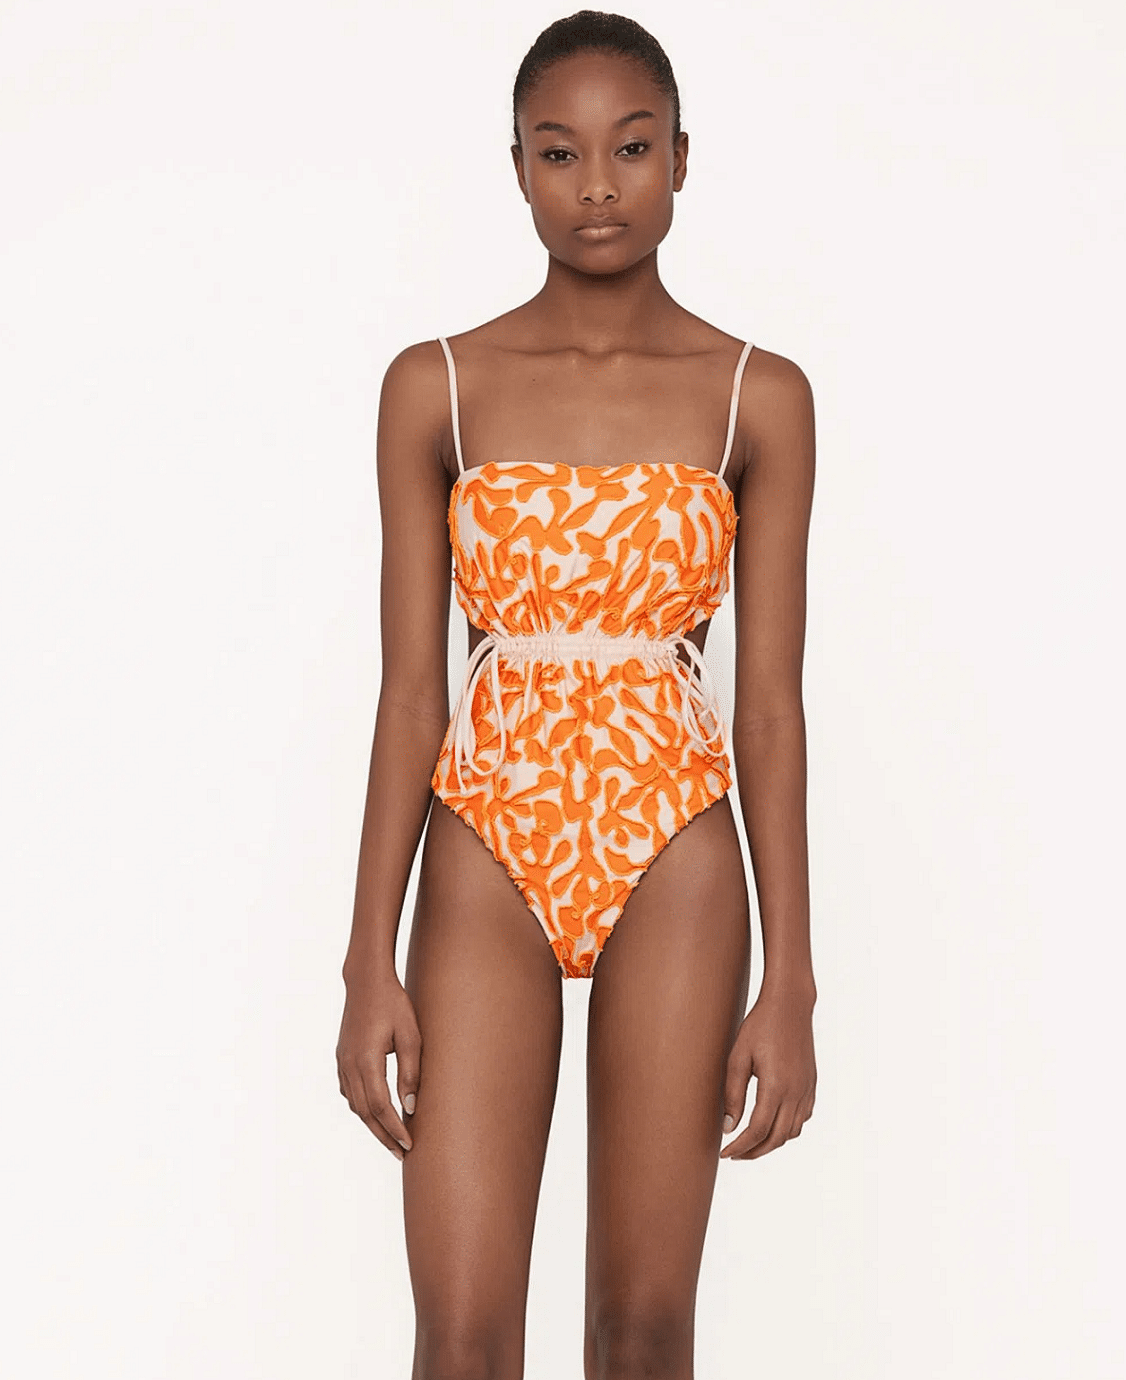 Thin Strap One Piece Swimsuit in Orange/White